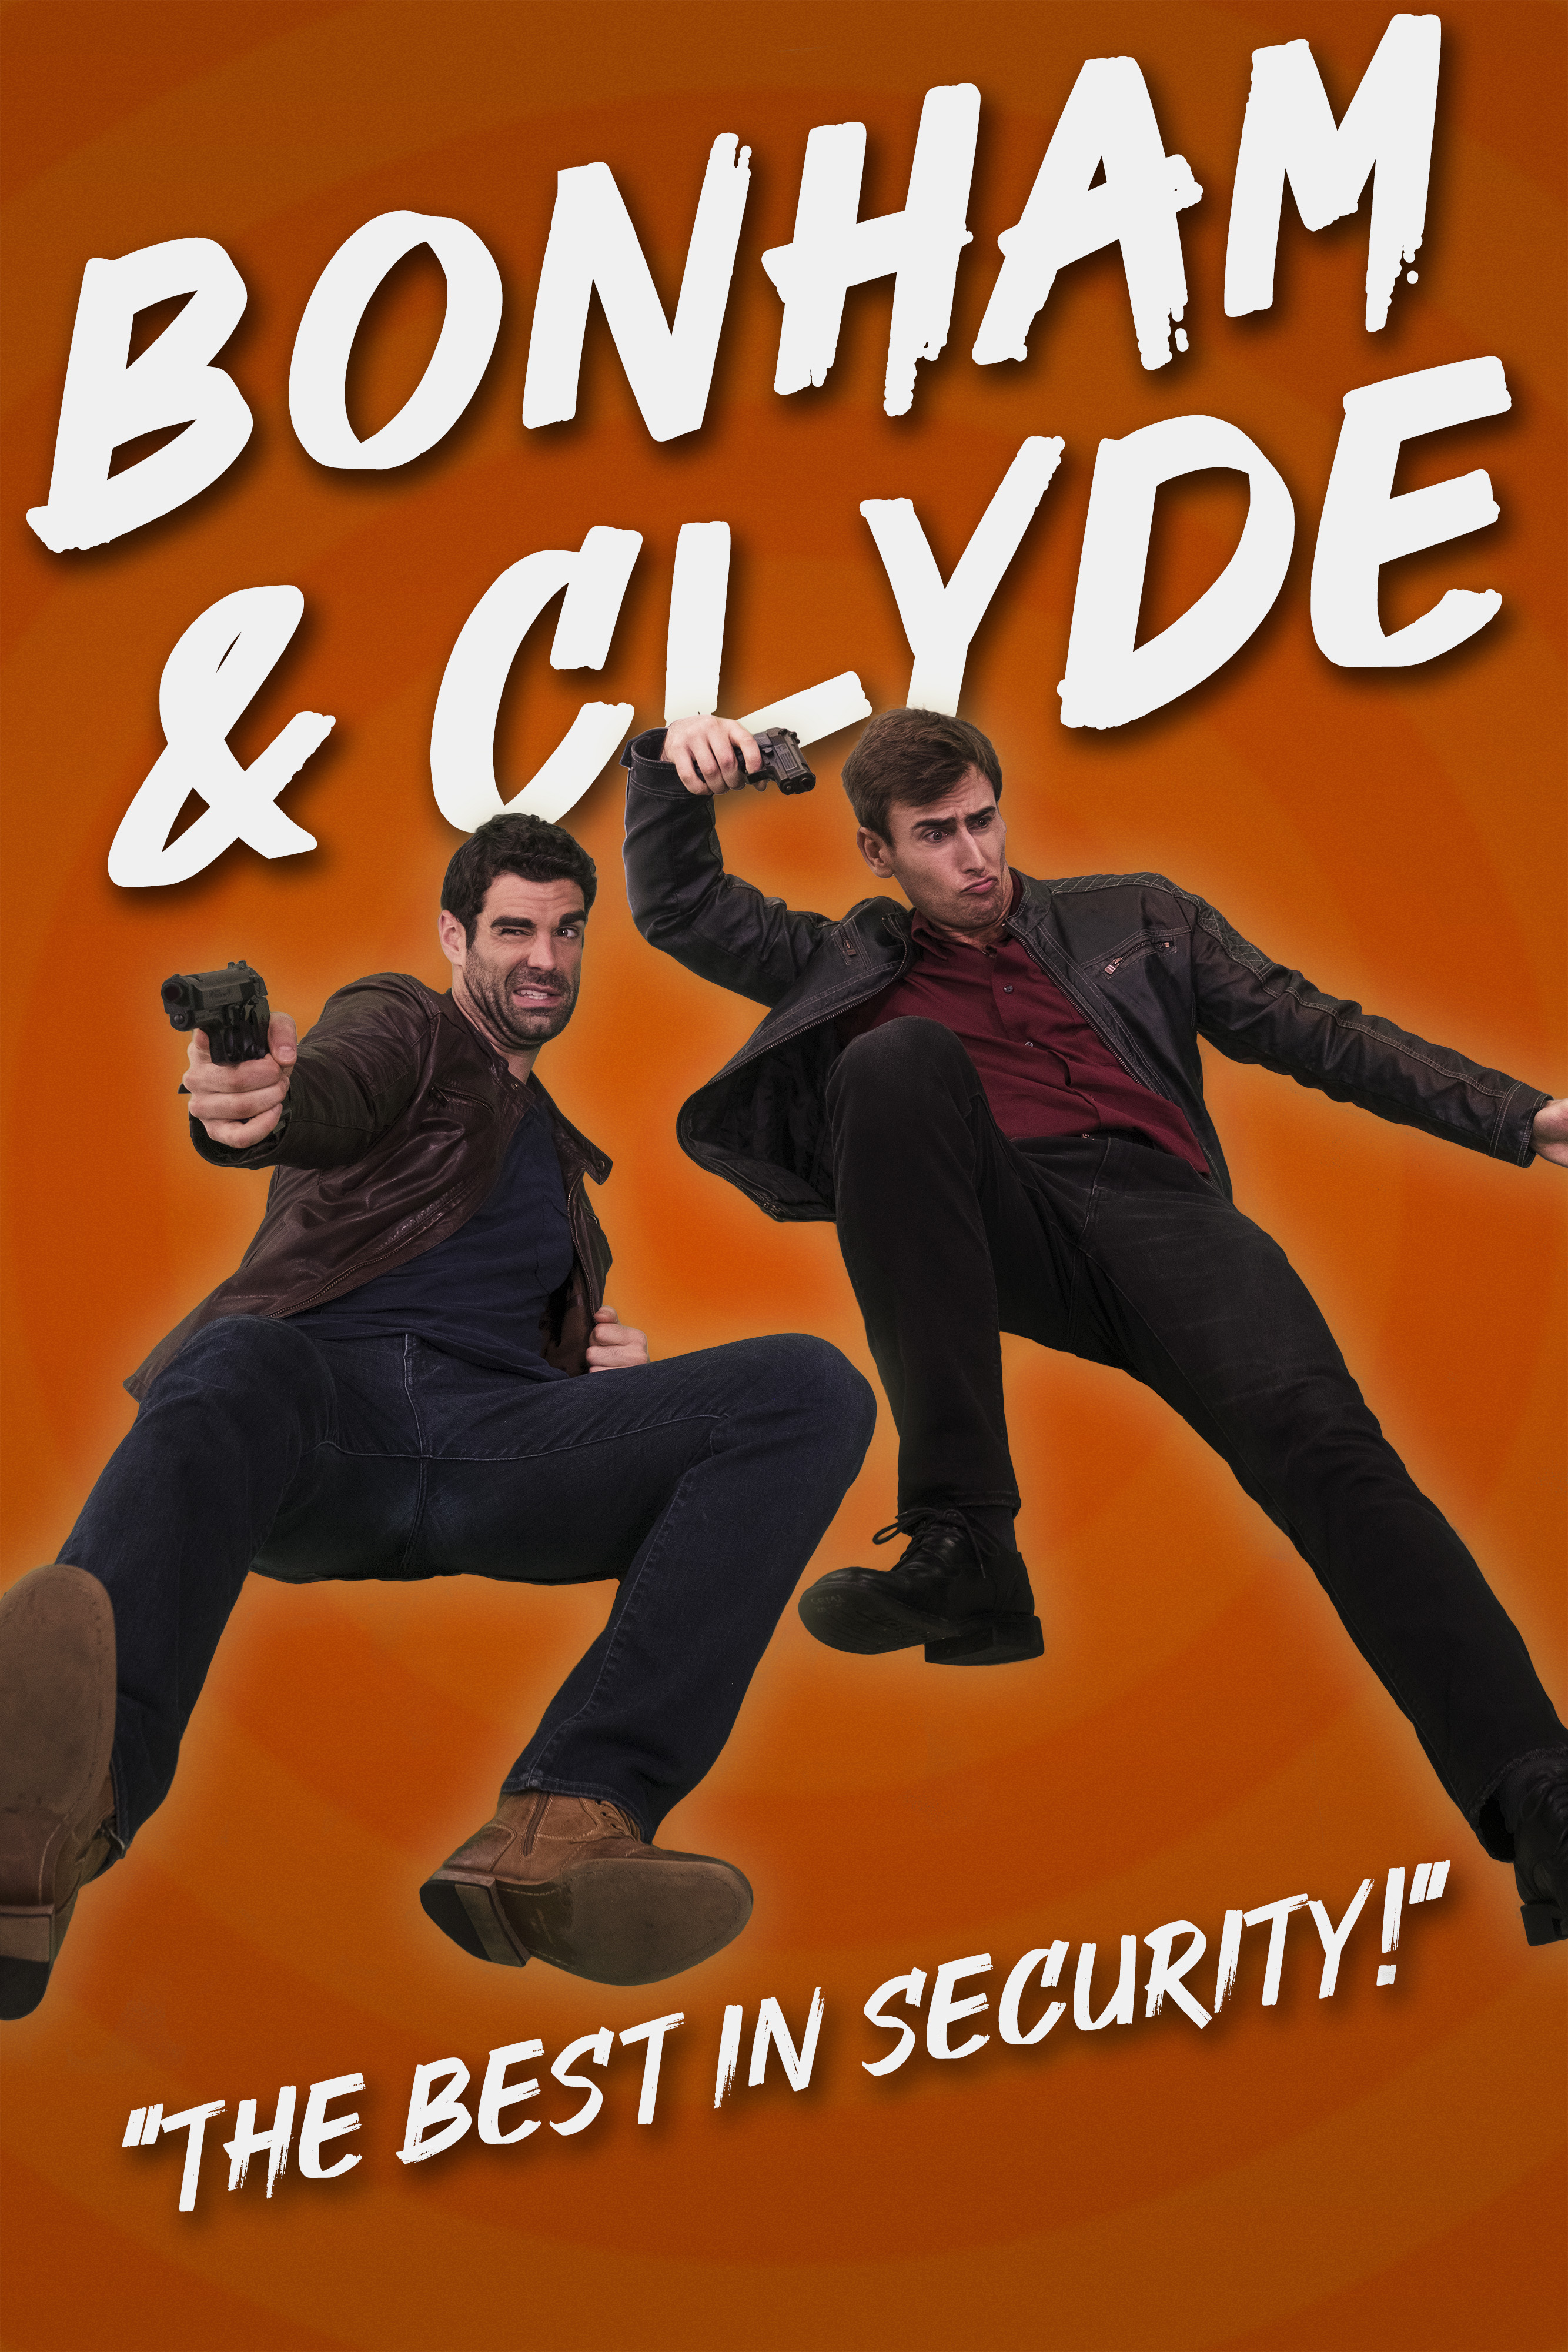 Bonham & Clyde: The Best in Security